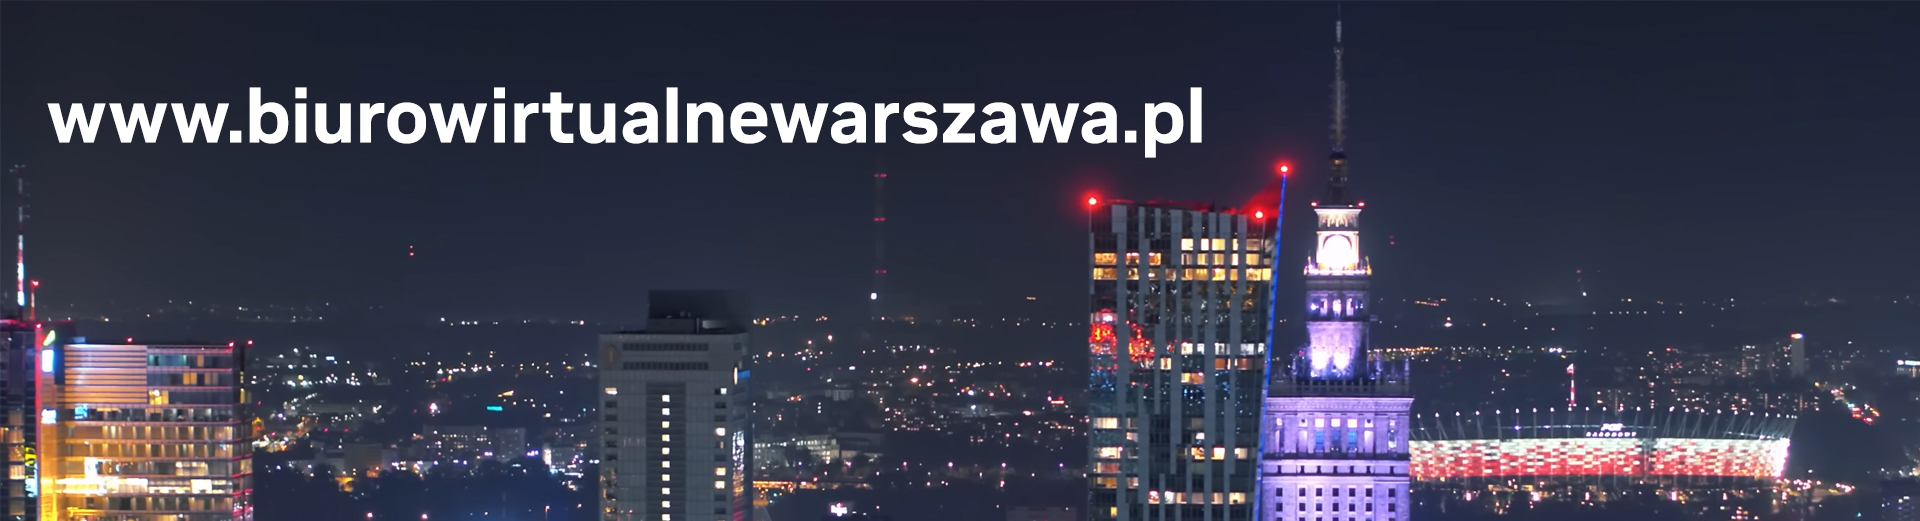 widok nocnej Warszawy